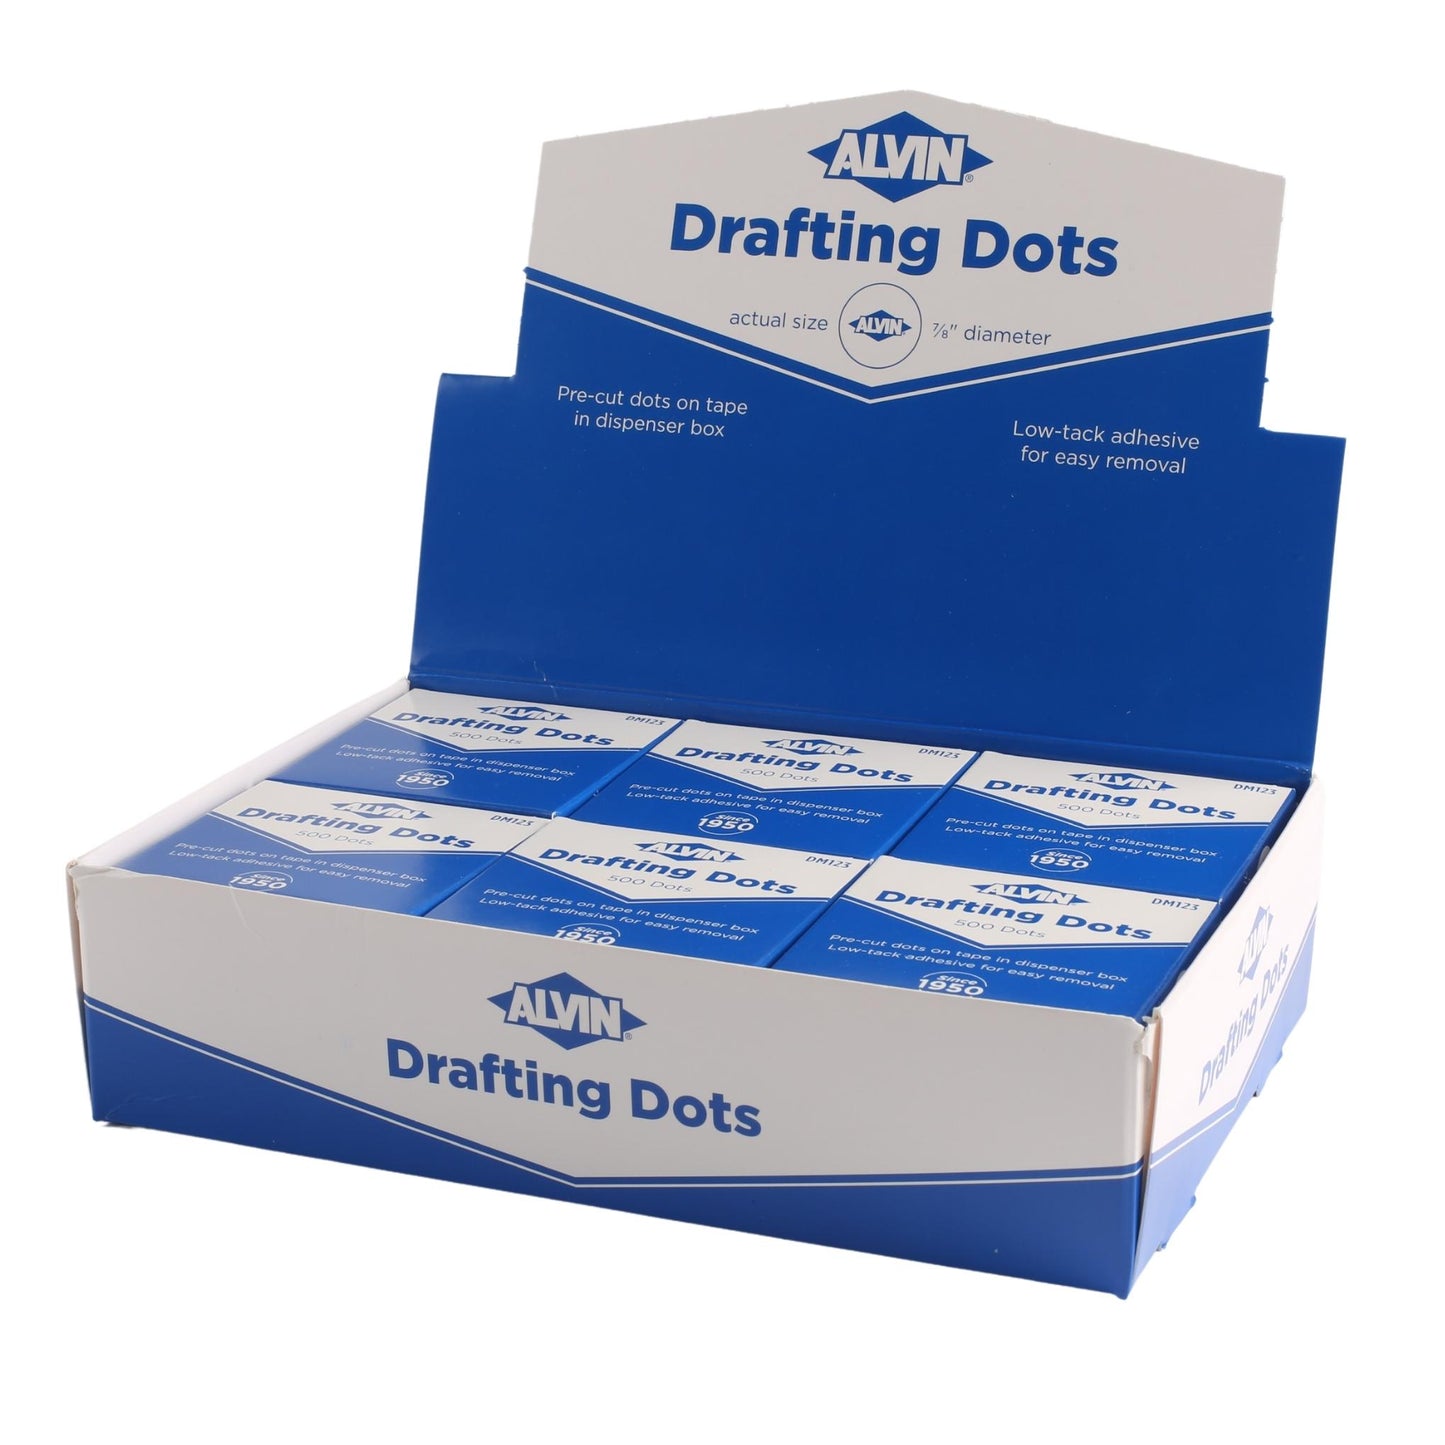 Drafting Dots